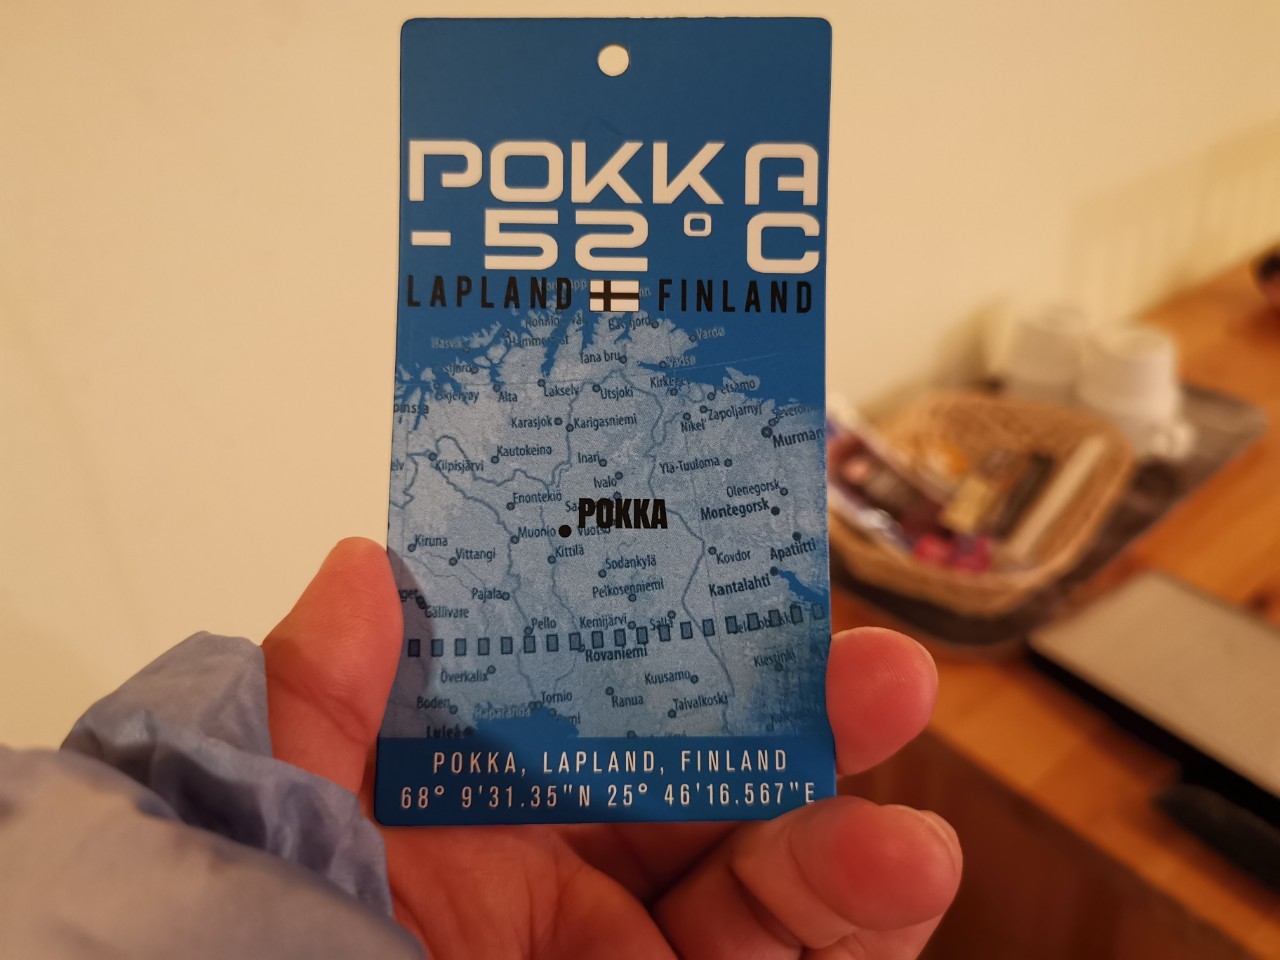 芬蘭拉普蘭地區超強POKKA -52度C外套購買記錄以及團員瘋狂採購實錄～含購買地點google map